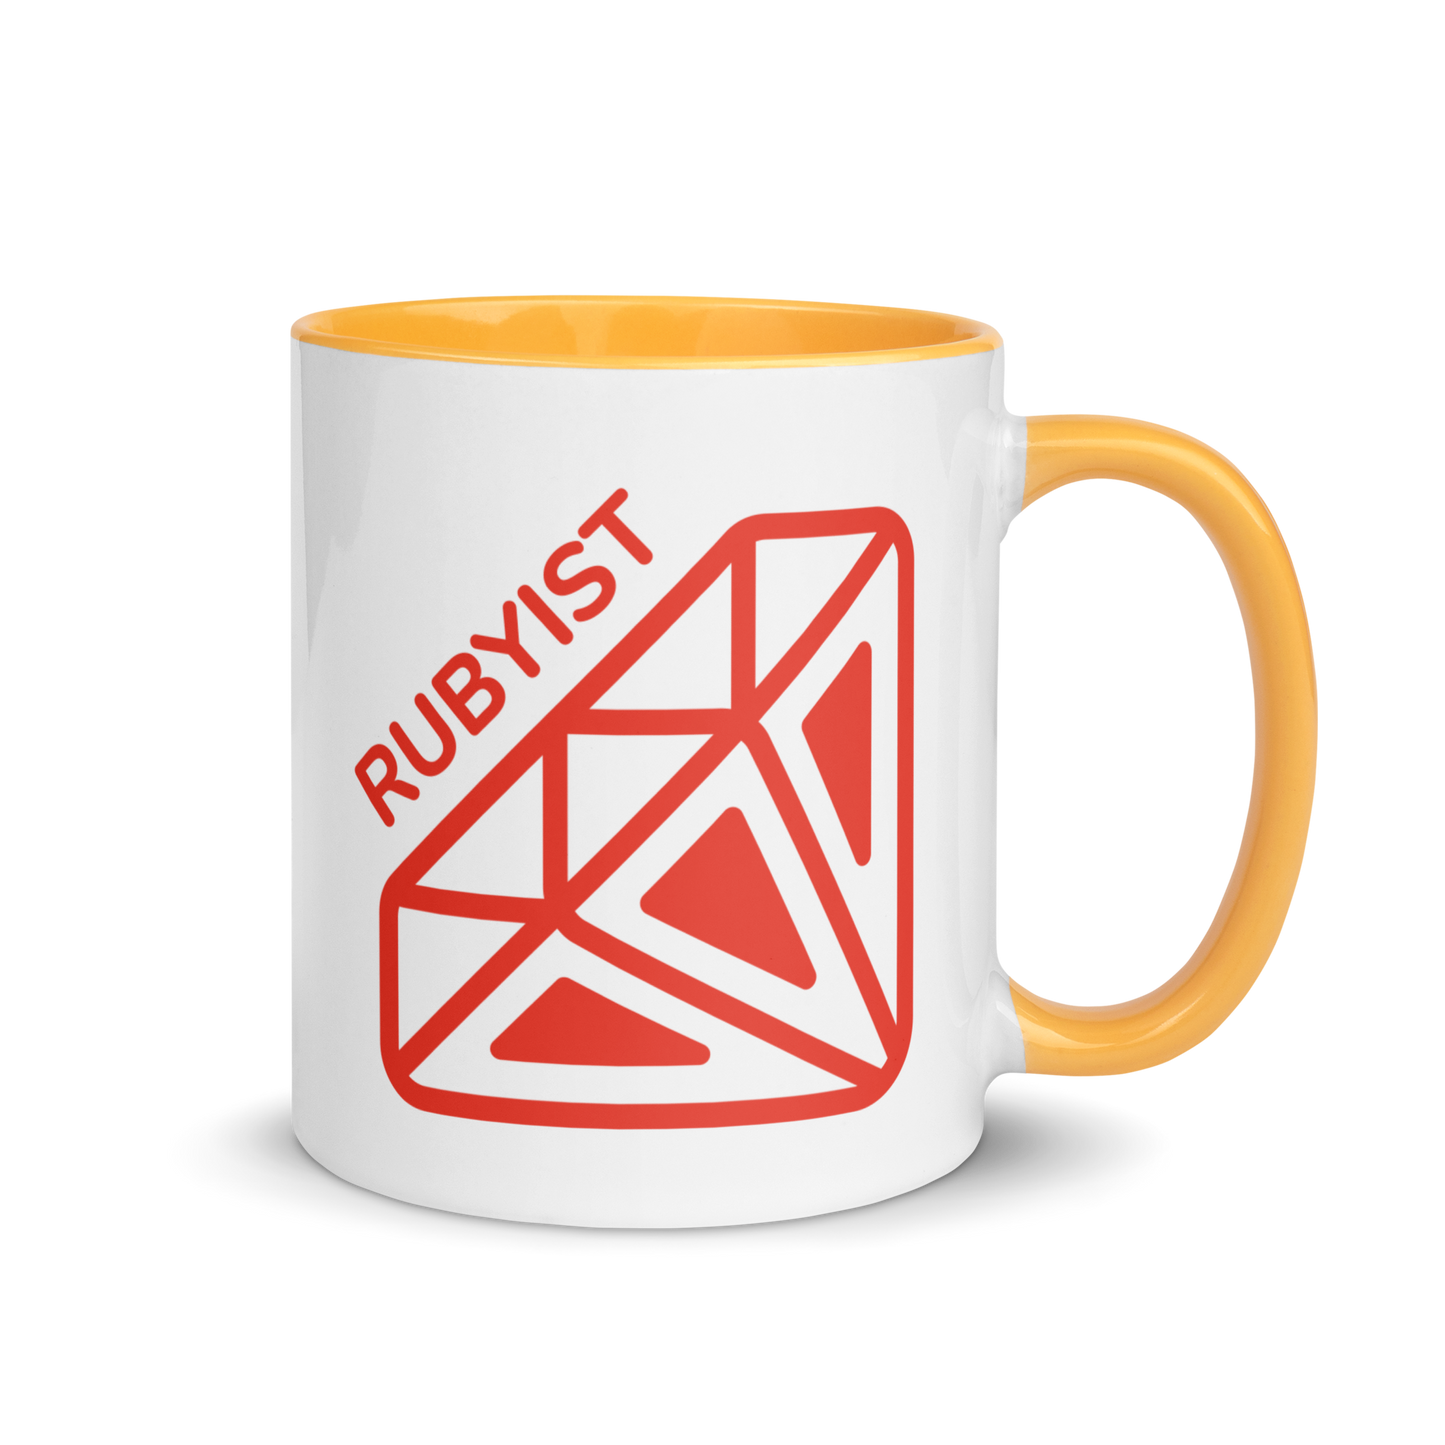 Rubyist Coffee Mug